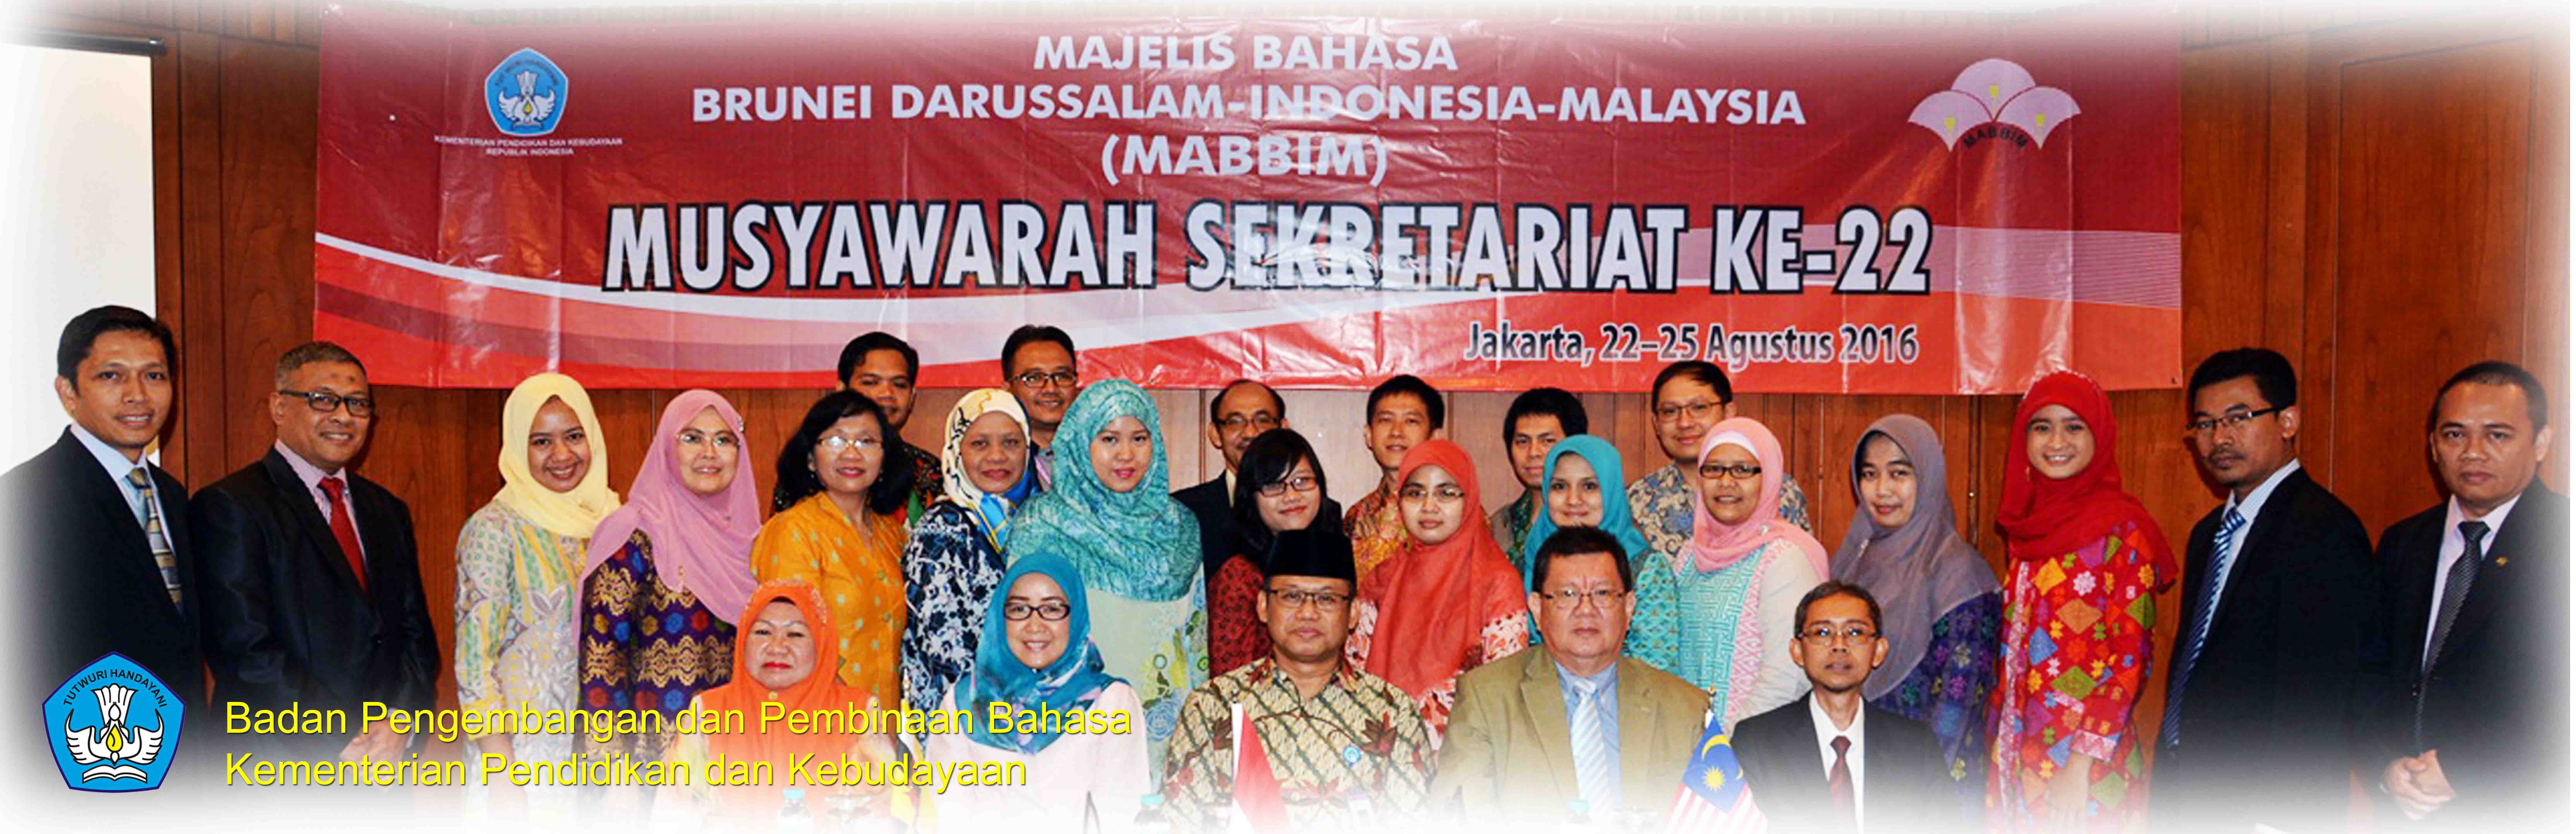 Musyawarah Sekretariat ke-22 Majelis Bahasa Brunei Darussalam-Indonesia-Malaysia (Mabbim)